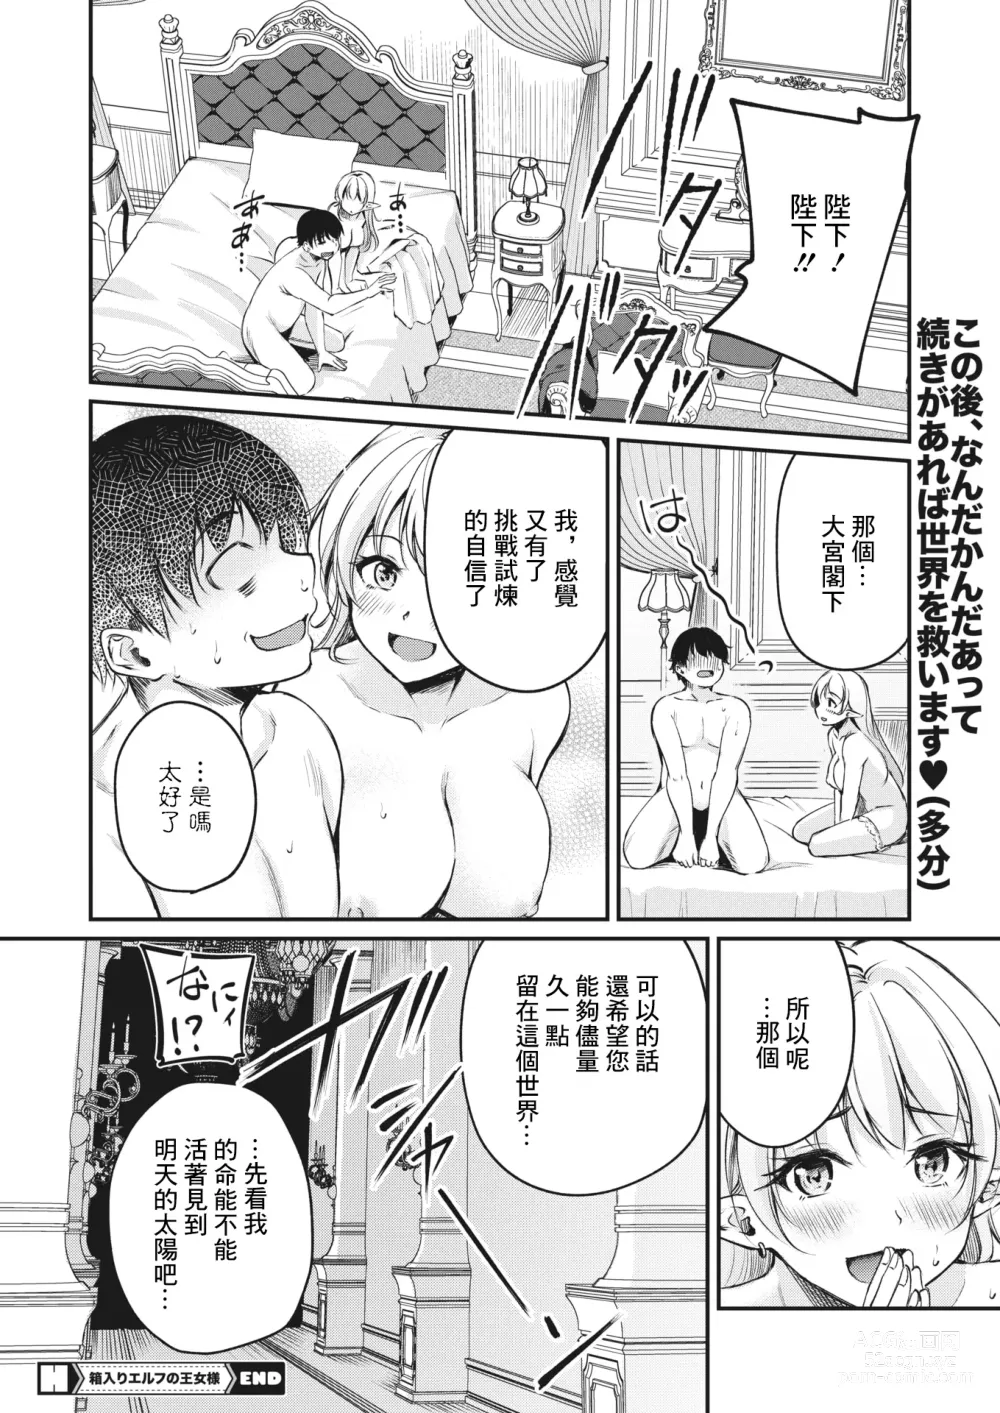 Page 26 of manga Hakoiri Elf no Oujo-sama